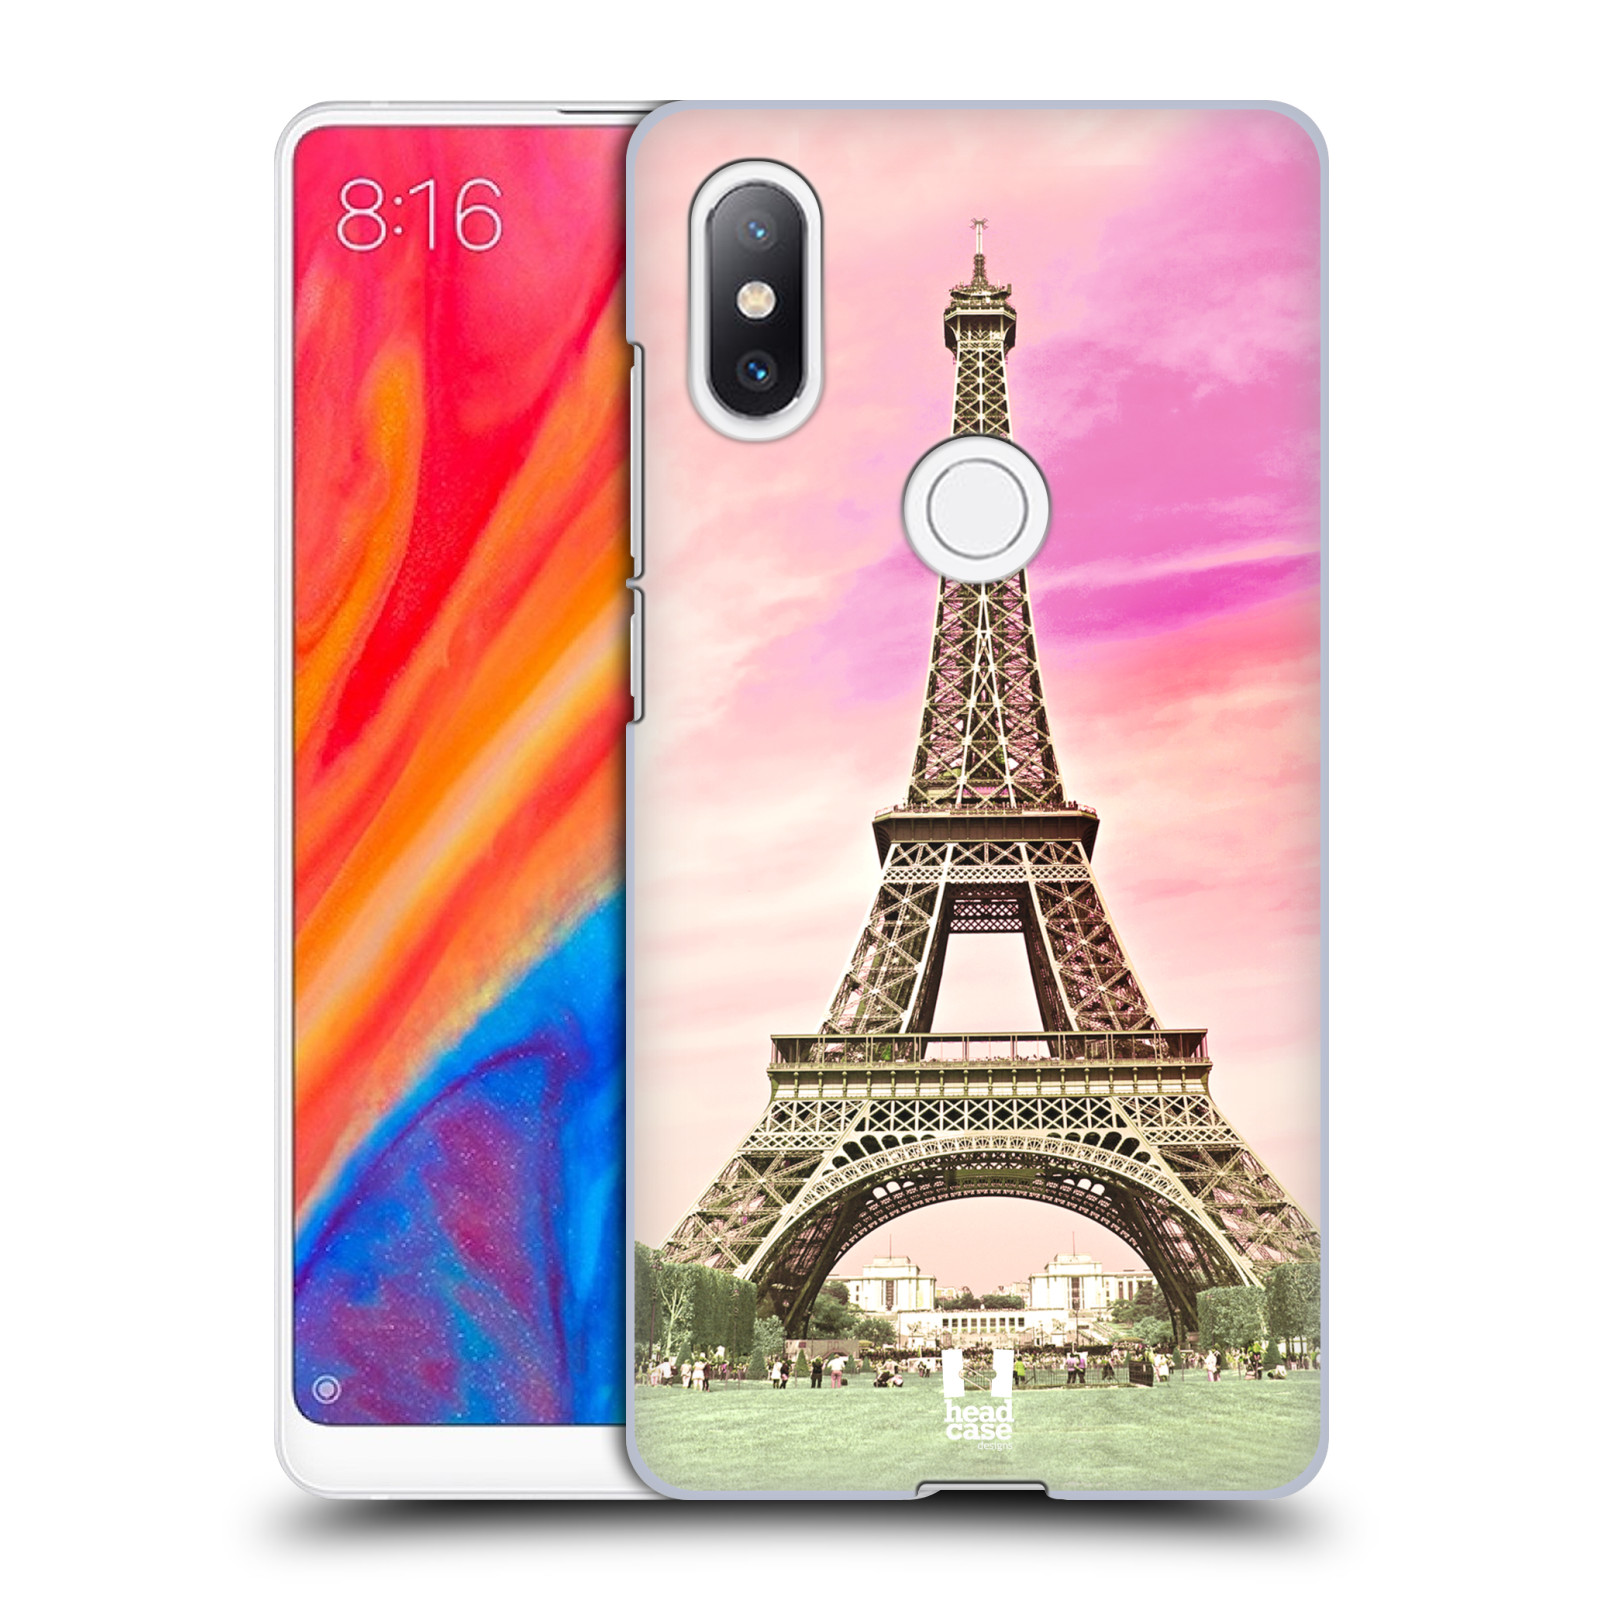 Pouzdro na mobil Xiaomi Mi Mix 2S - HEAD CASE - historická místa Eiffelova věž Paříž